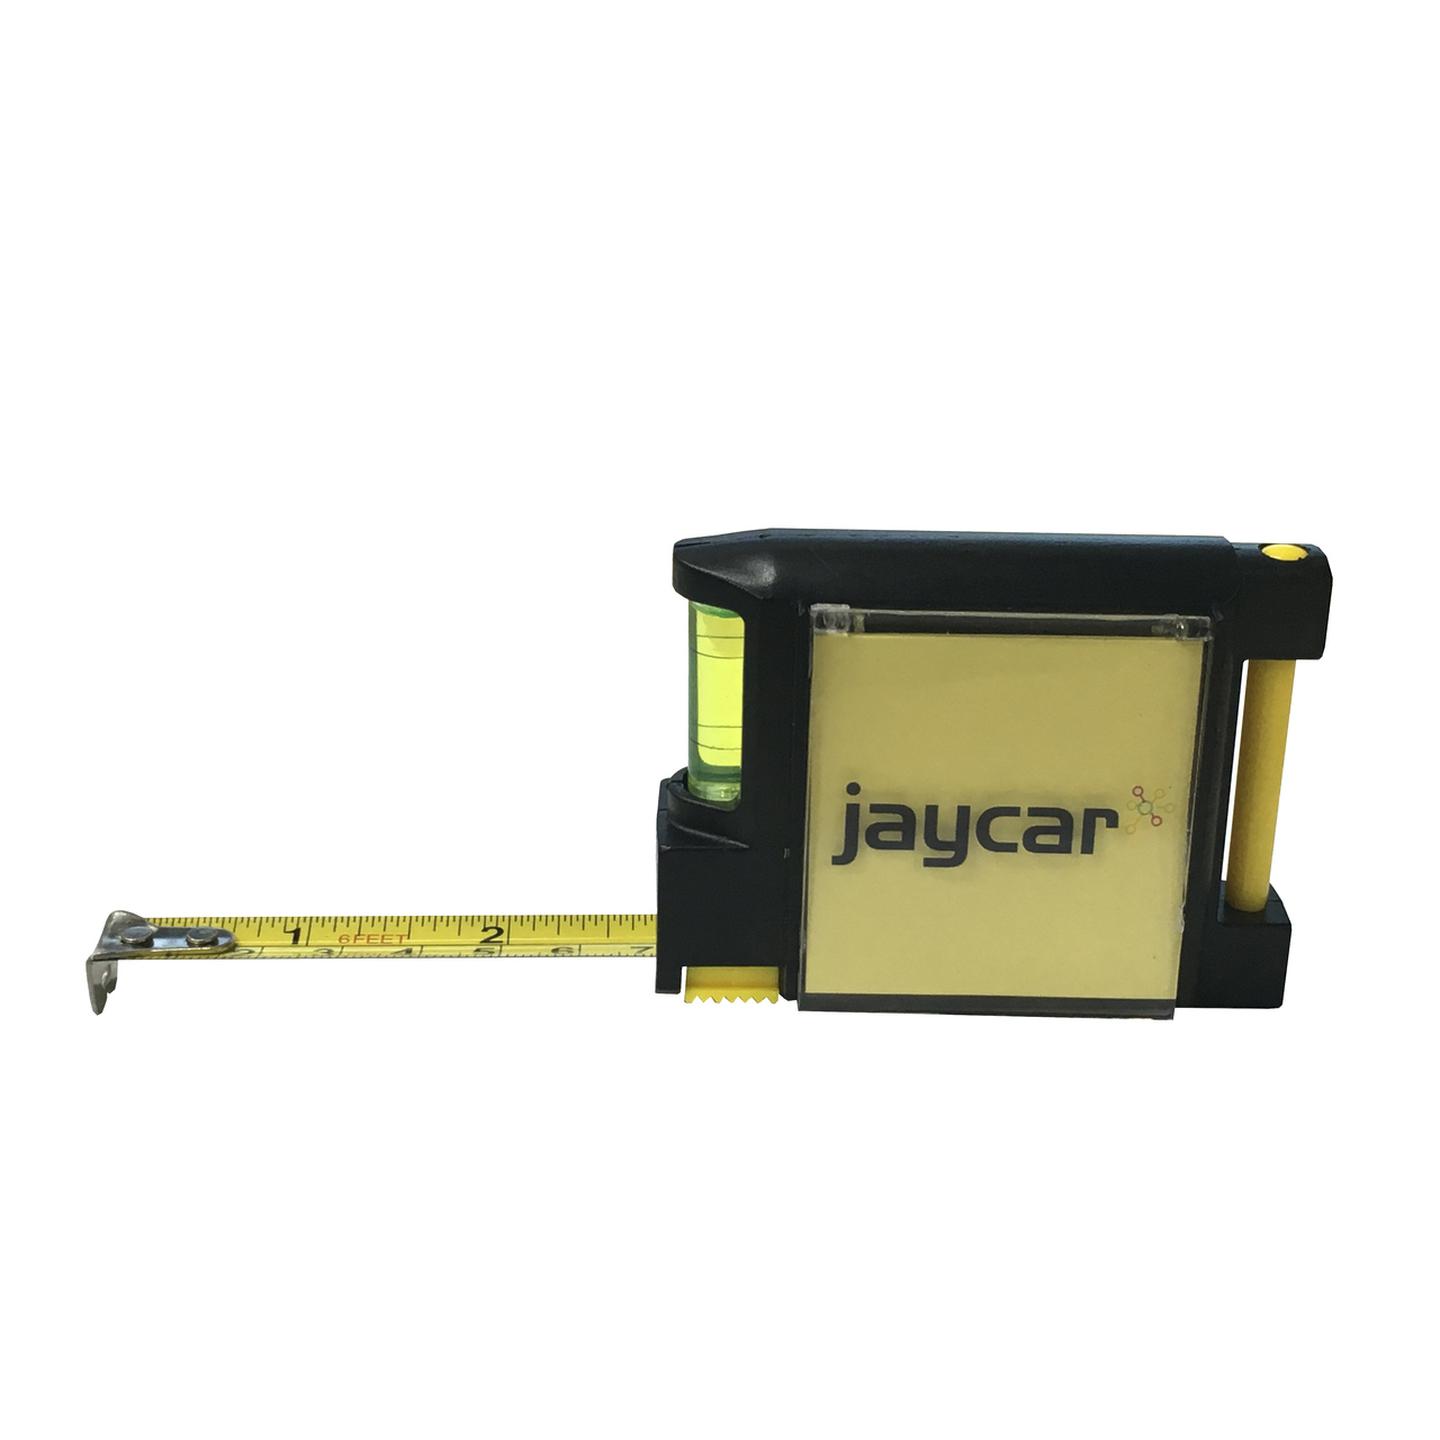 4 in 1 Tape Measure Jaycar Promo